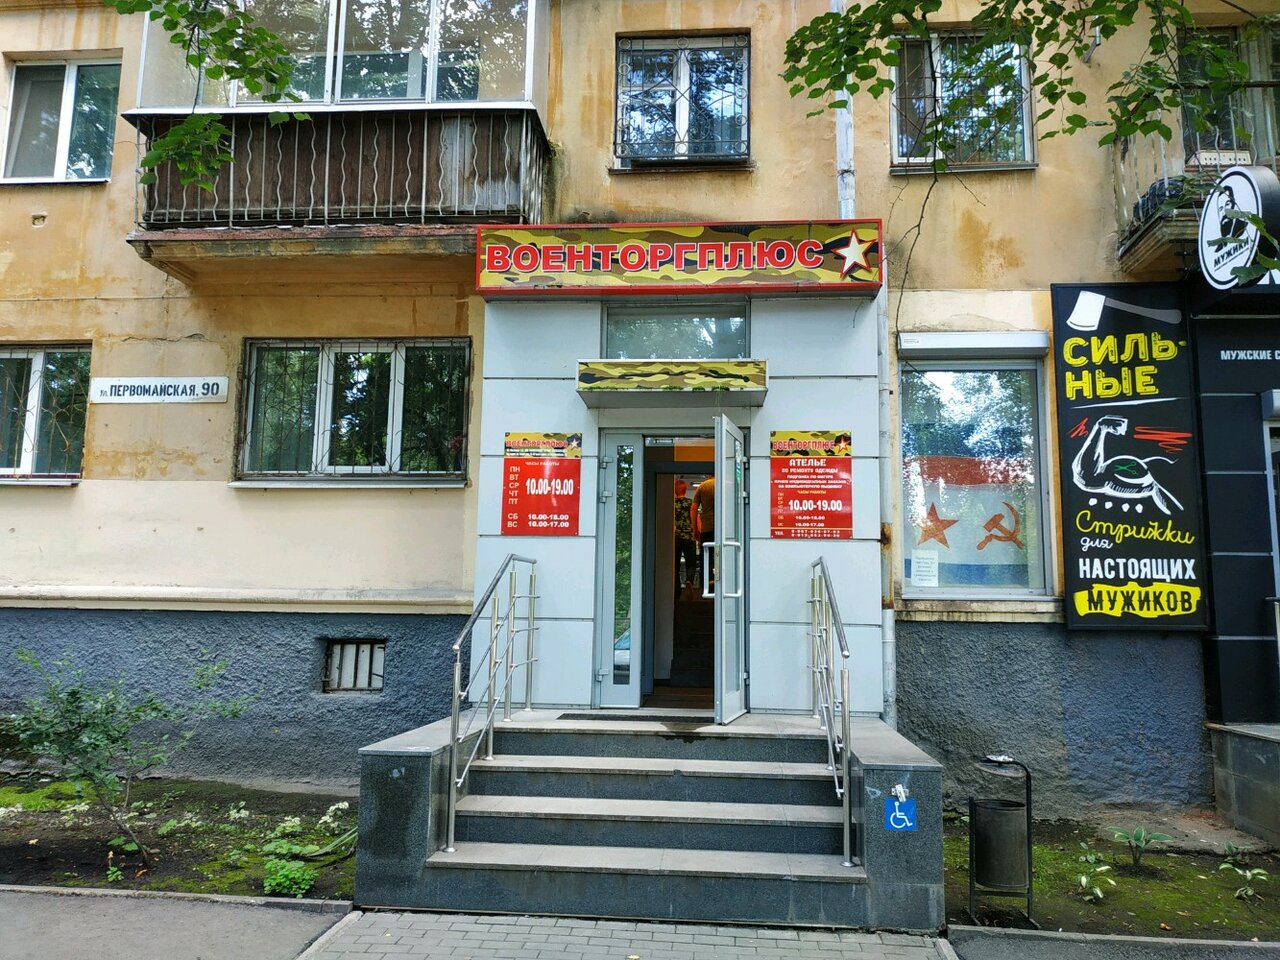 Вход в армейский магазин "Военторгплюс" на Первомайской в Екатеринбурге